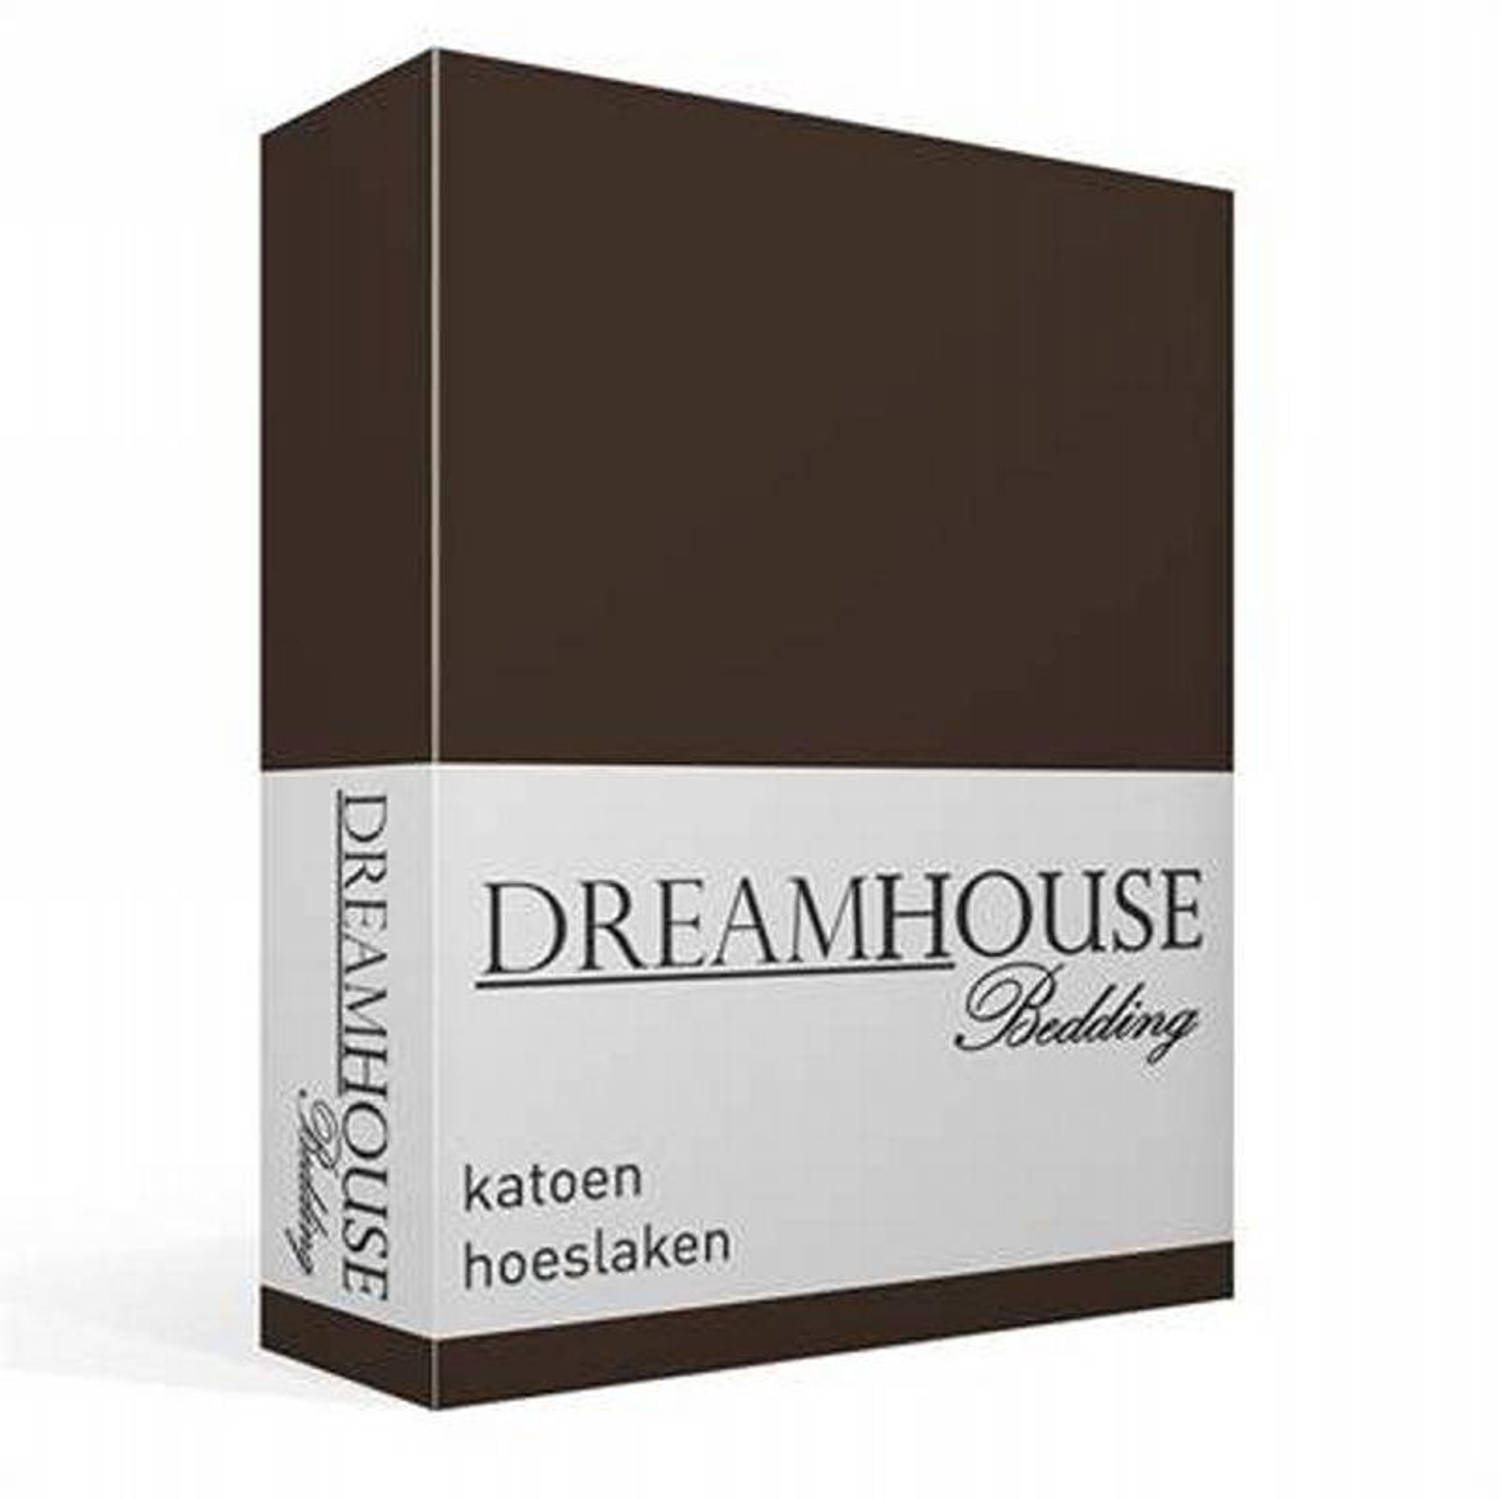 Dreamhouse Bedding katoen hoeslaken - 100% katoen - 2-persoons (120x200 cm) - Bruin